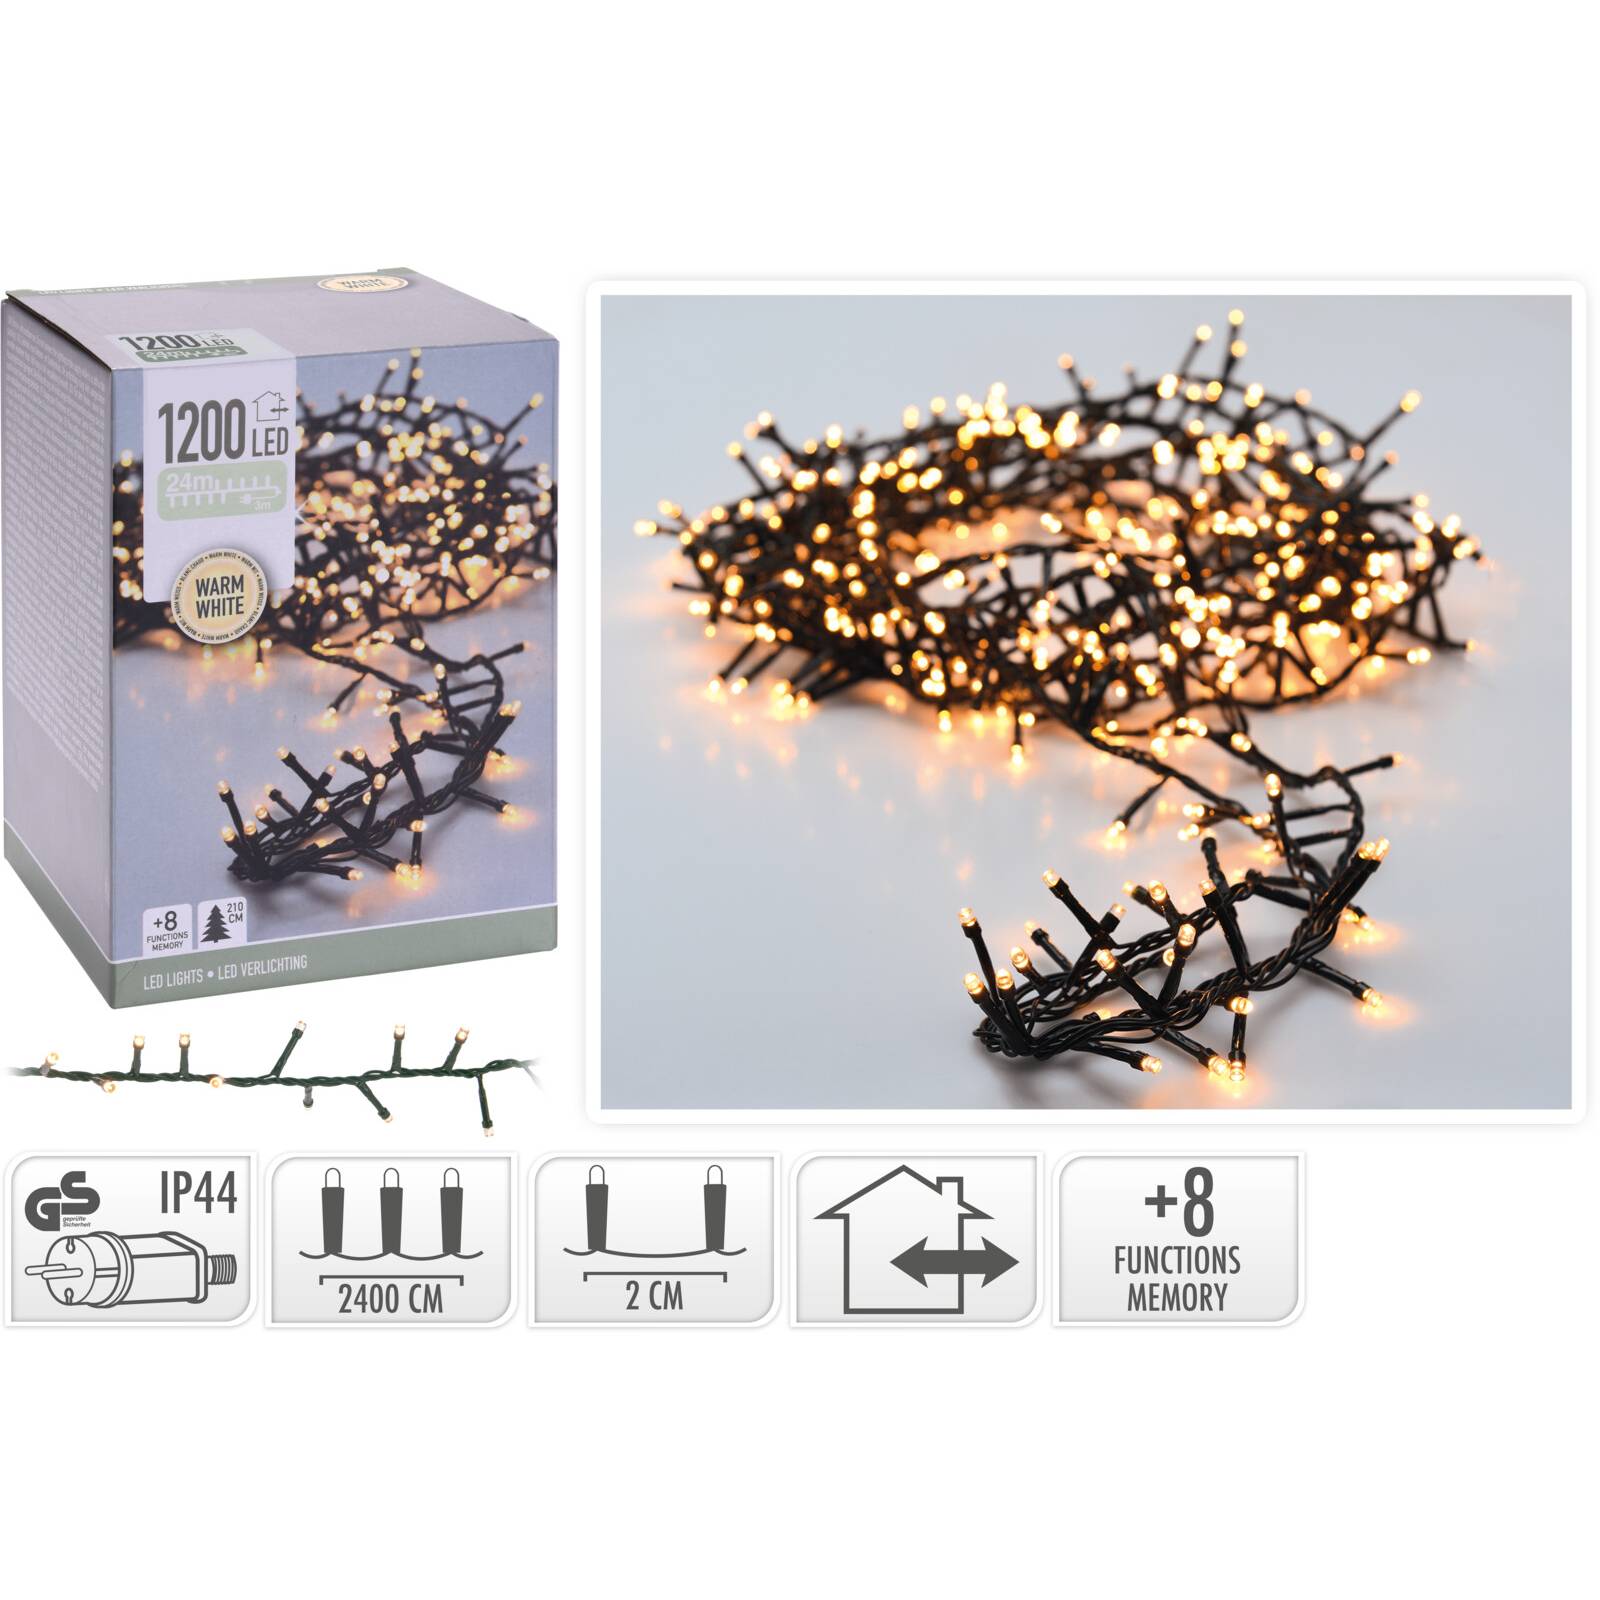 Fotografie Instalatie micro cluster Craciun, 1200 LED-uri, lumina calda, 8 functii, exterior,2400 cm